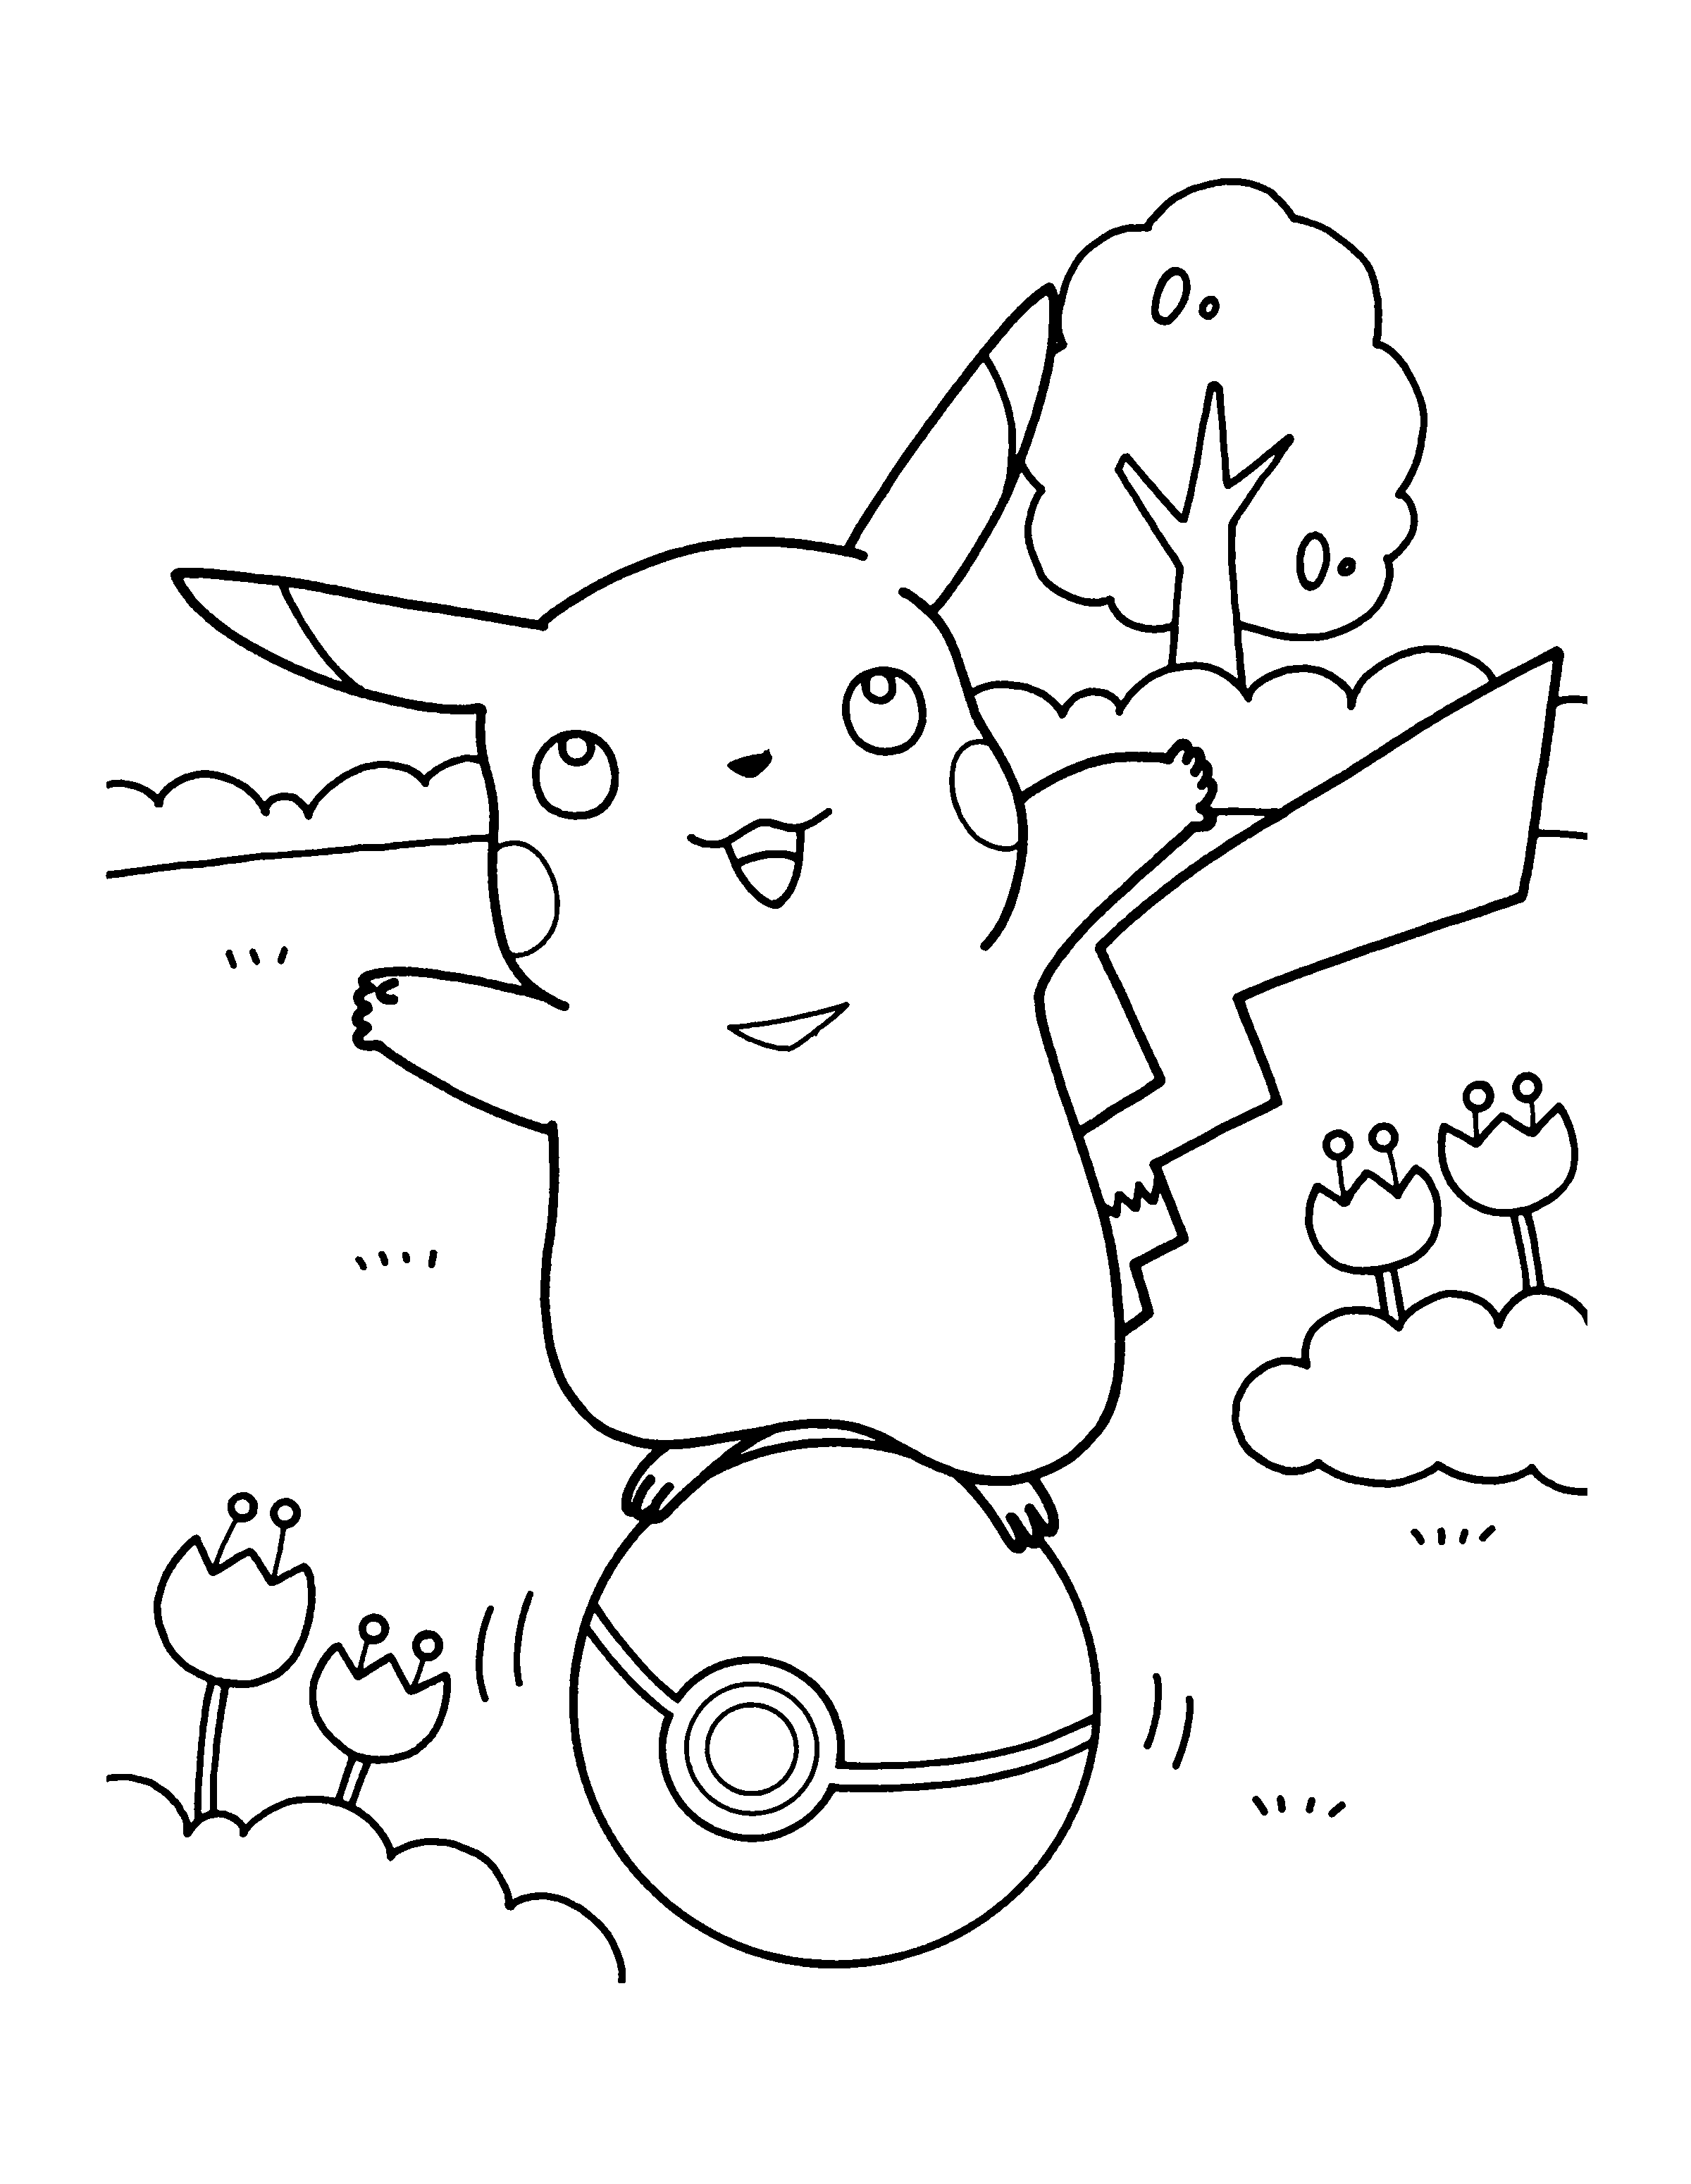 Disegno di Pikachu su una Pokeball da colorare